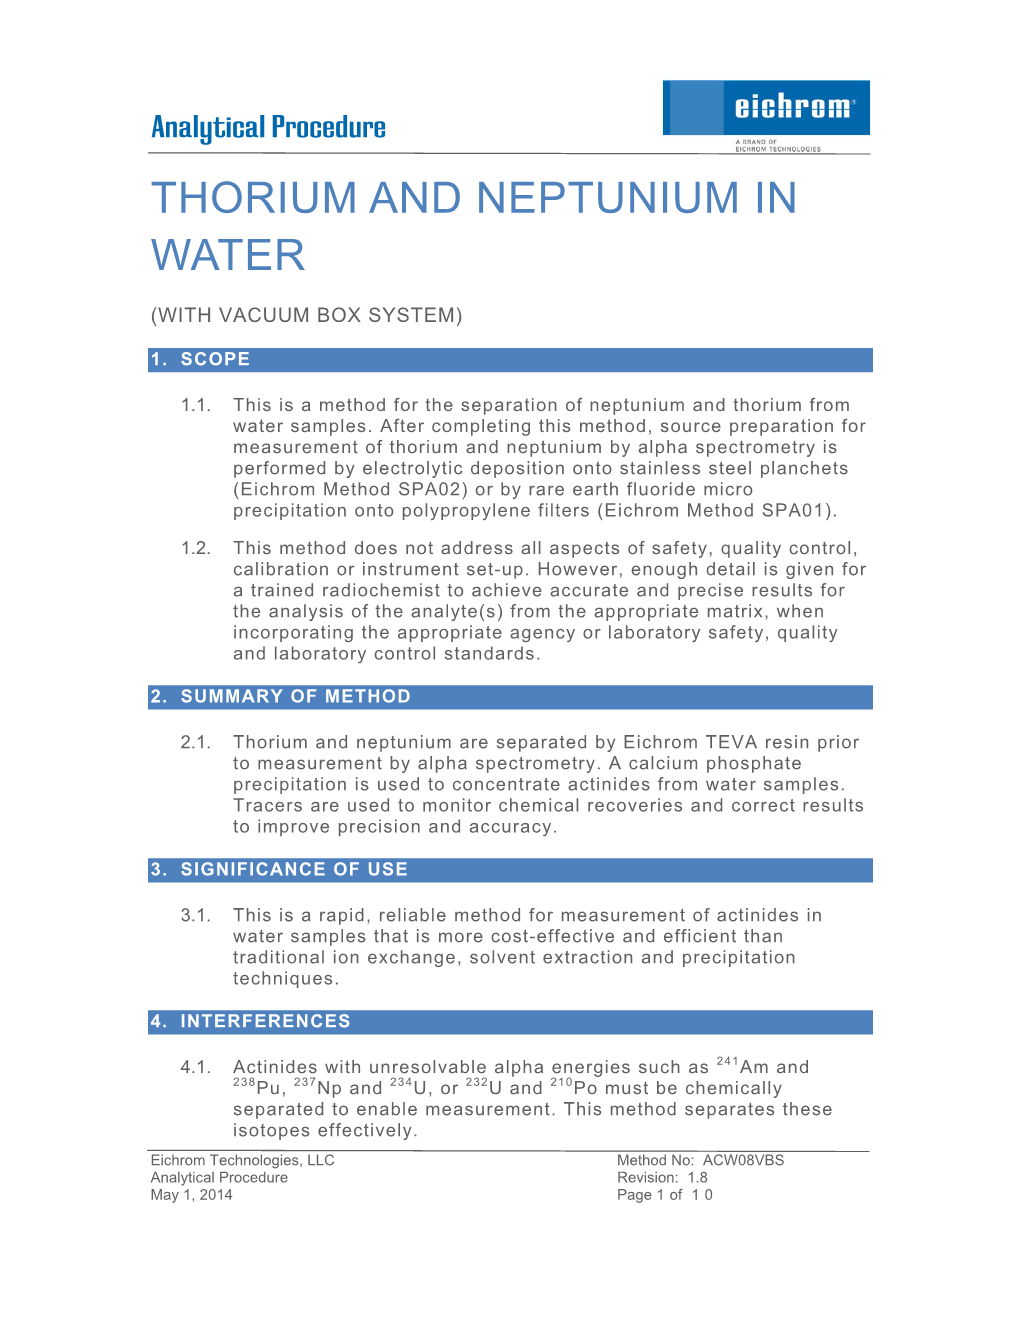 Thorium and Neptunium in Water